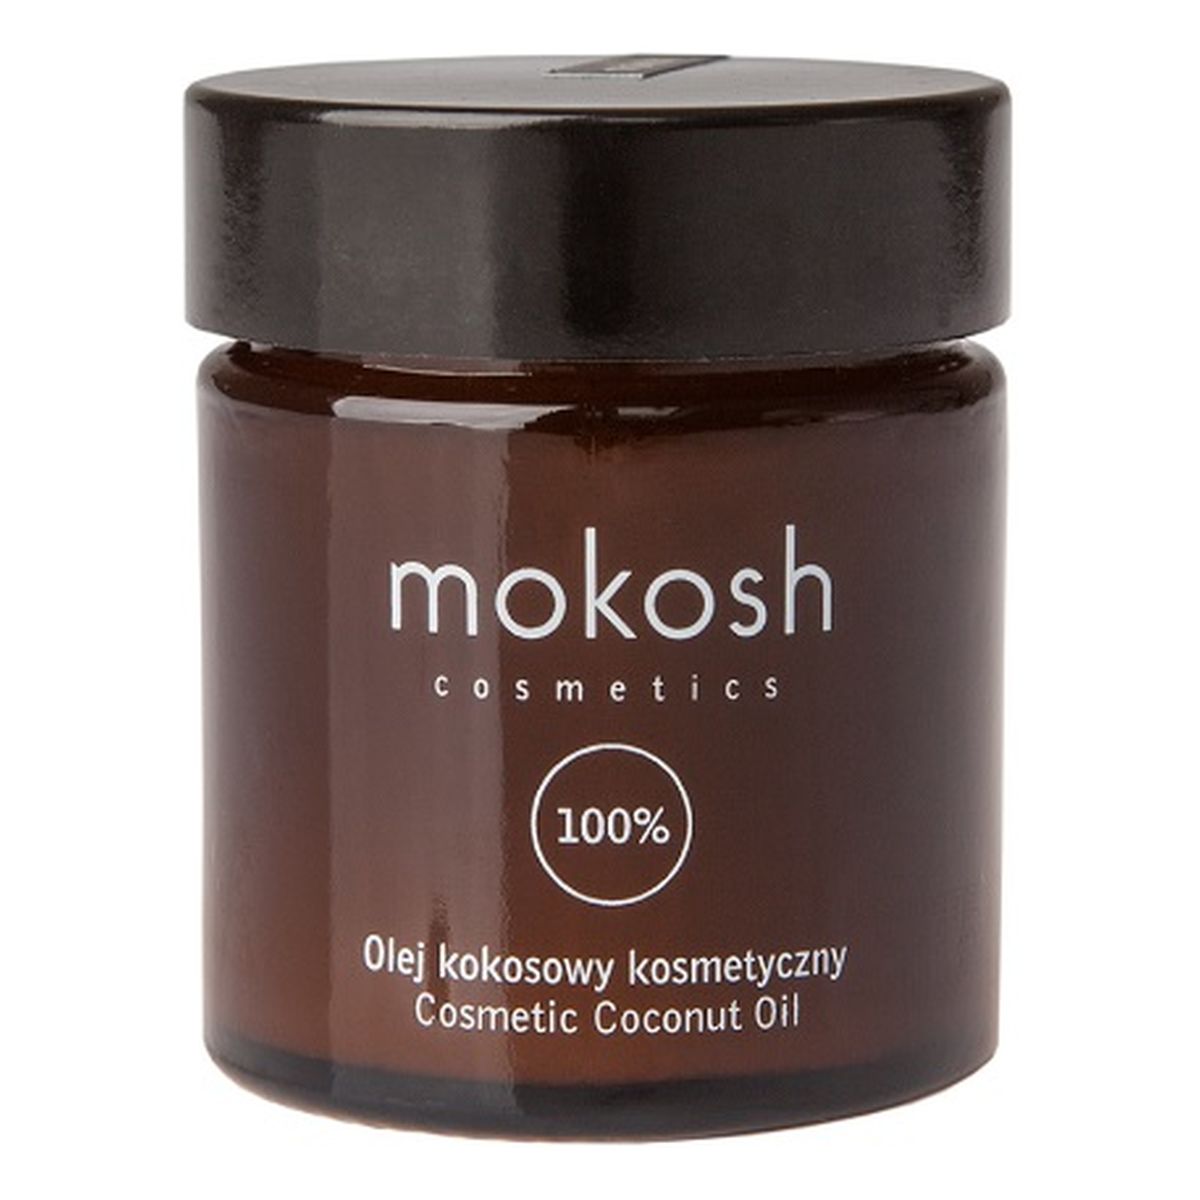 Mokosh Coconut Oil olej kokosowy kosmetyczny 30ml